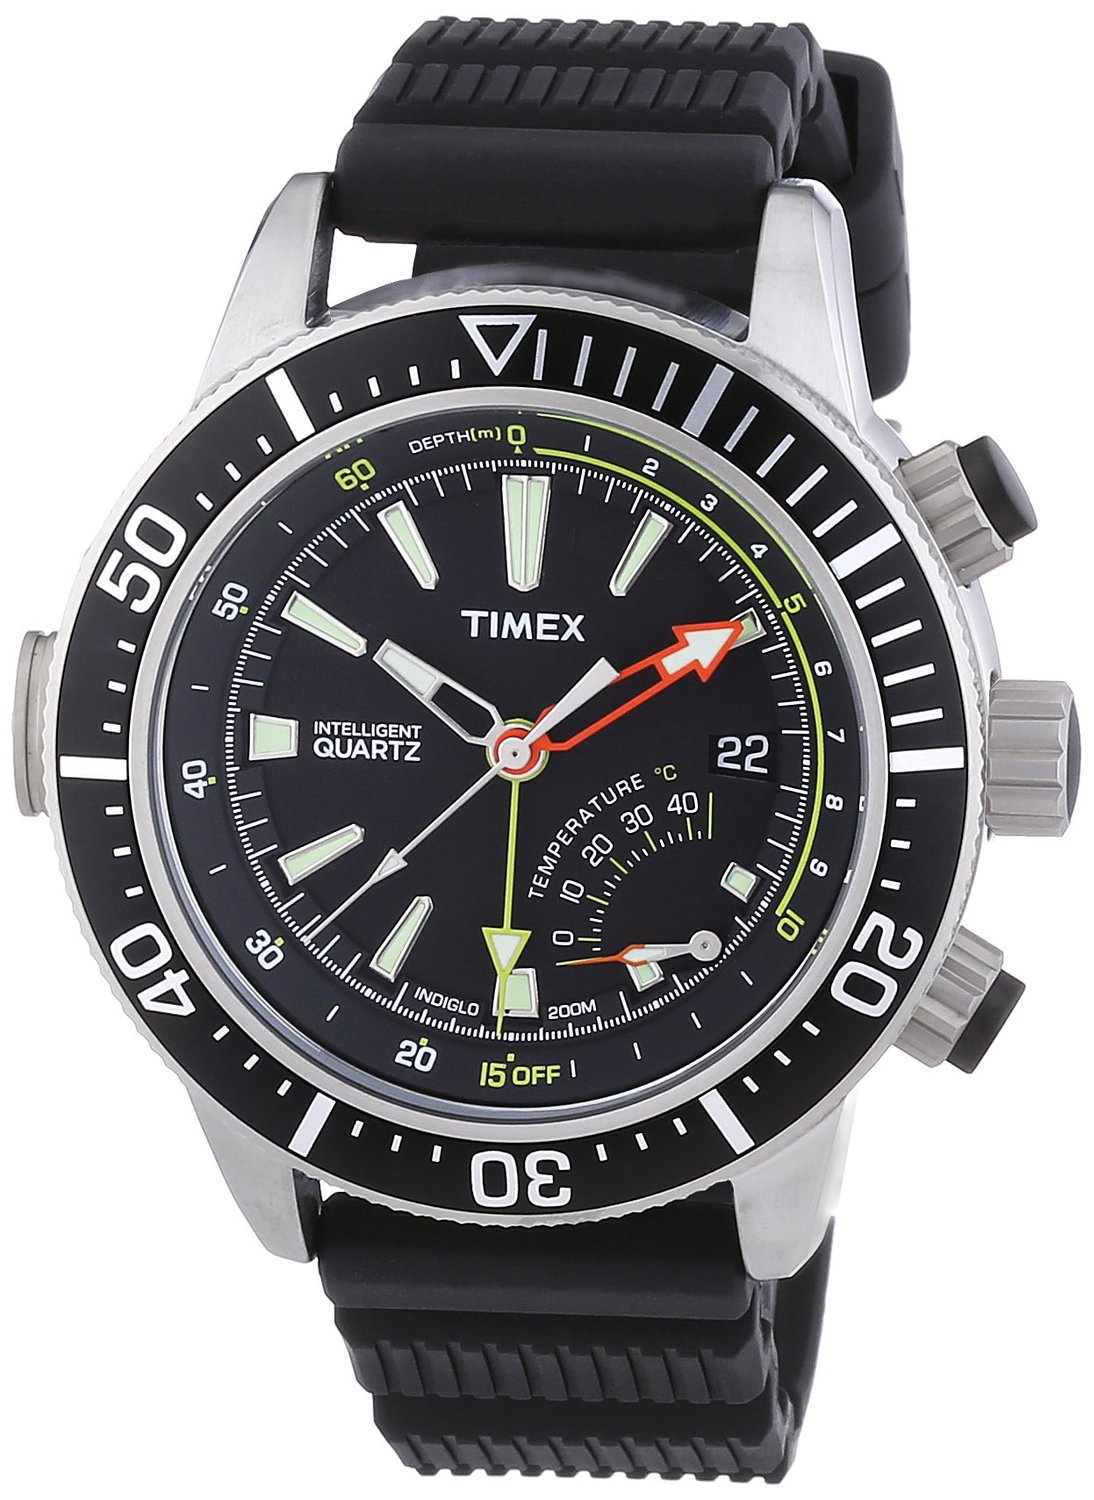 Timex Intelligent Quartz T2N810 Indiglo underwater watch